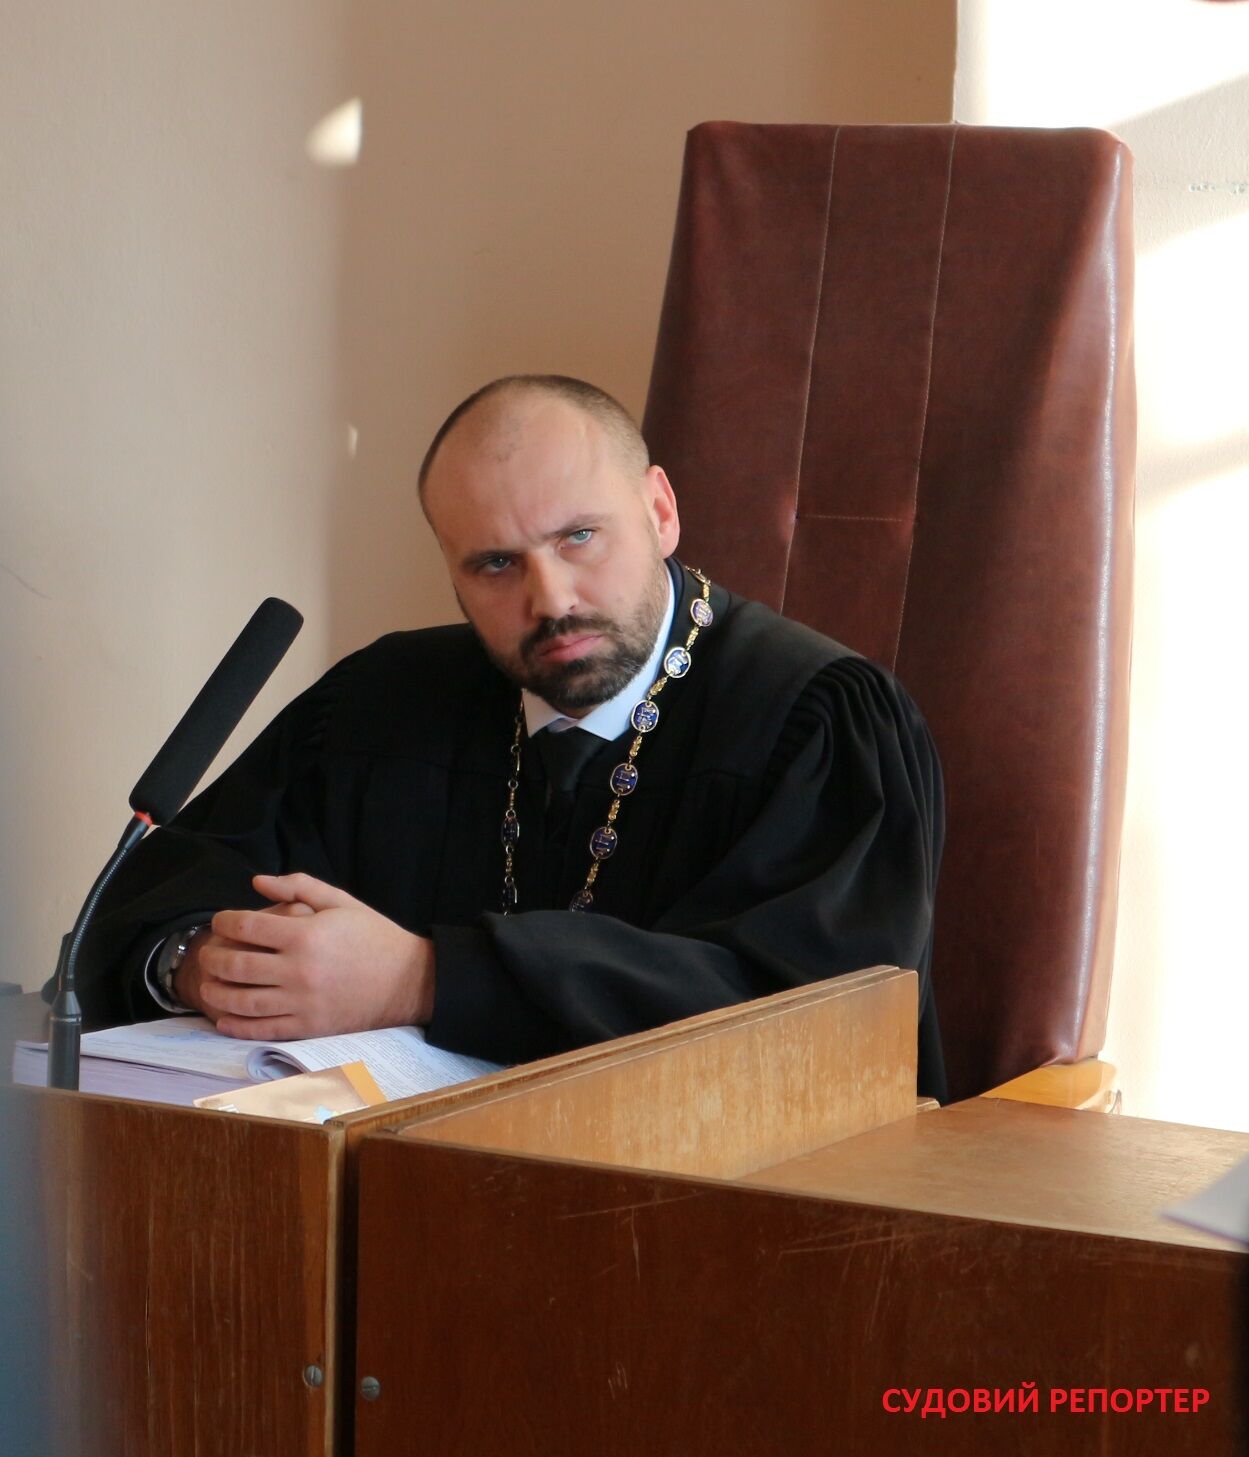 "Скорая" не спасла: всплыли обстоятельства смерти судьи Бобровника